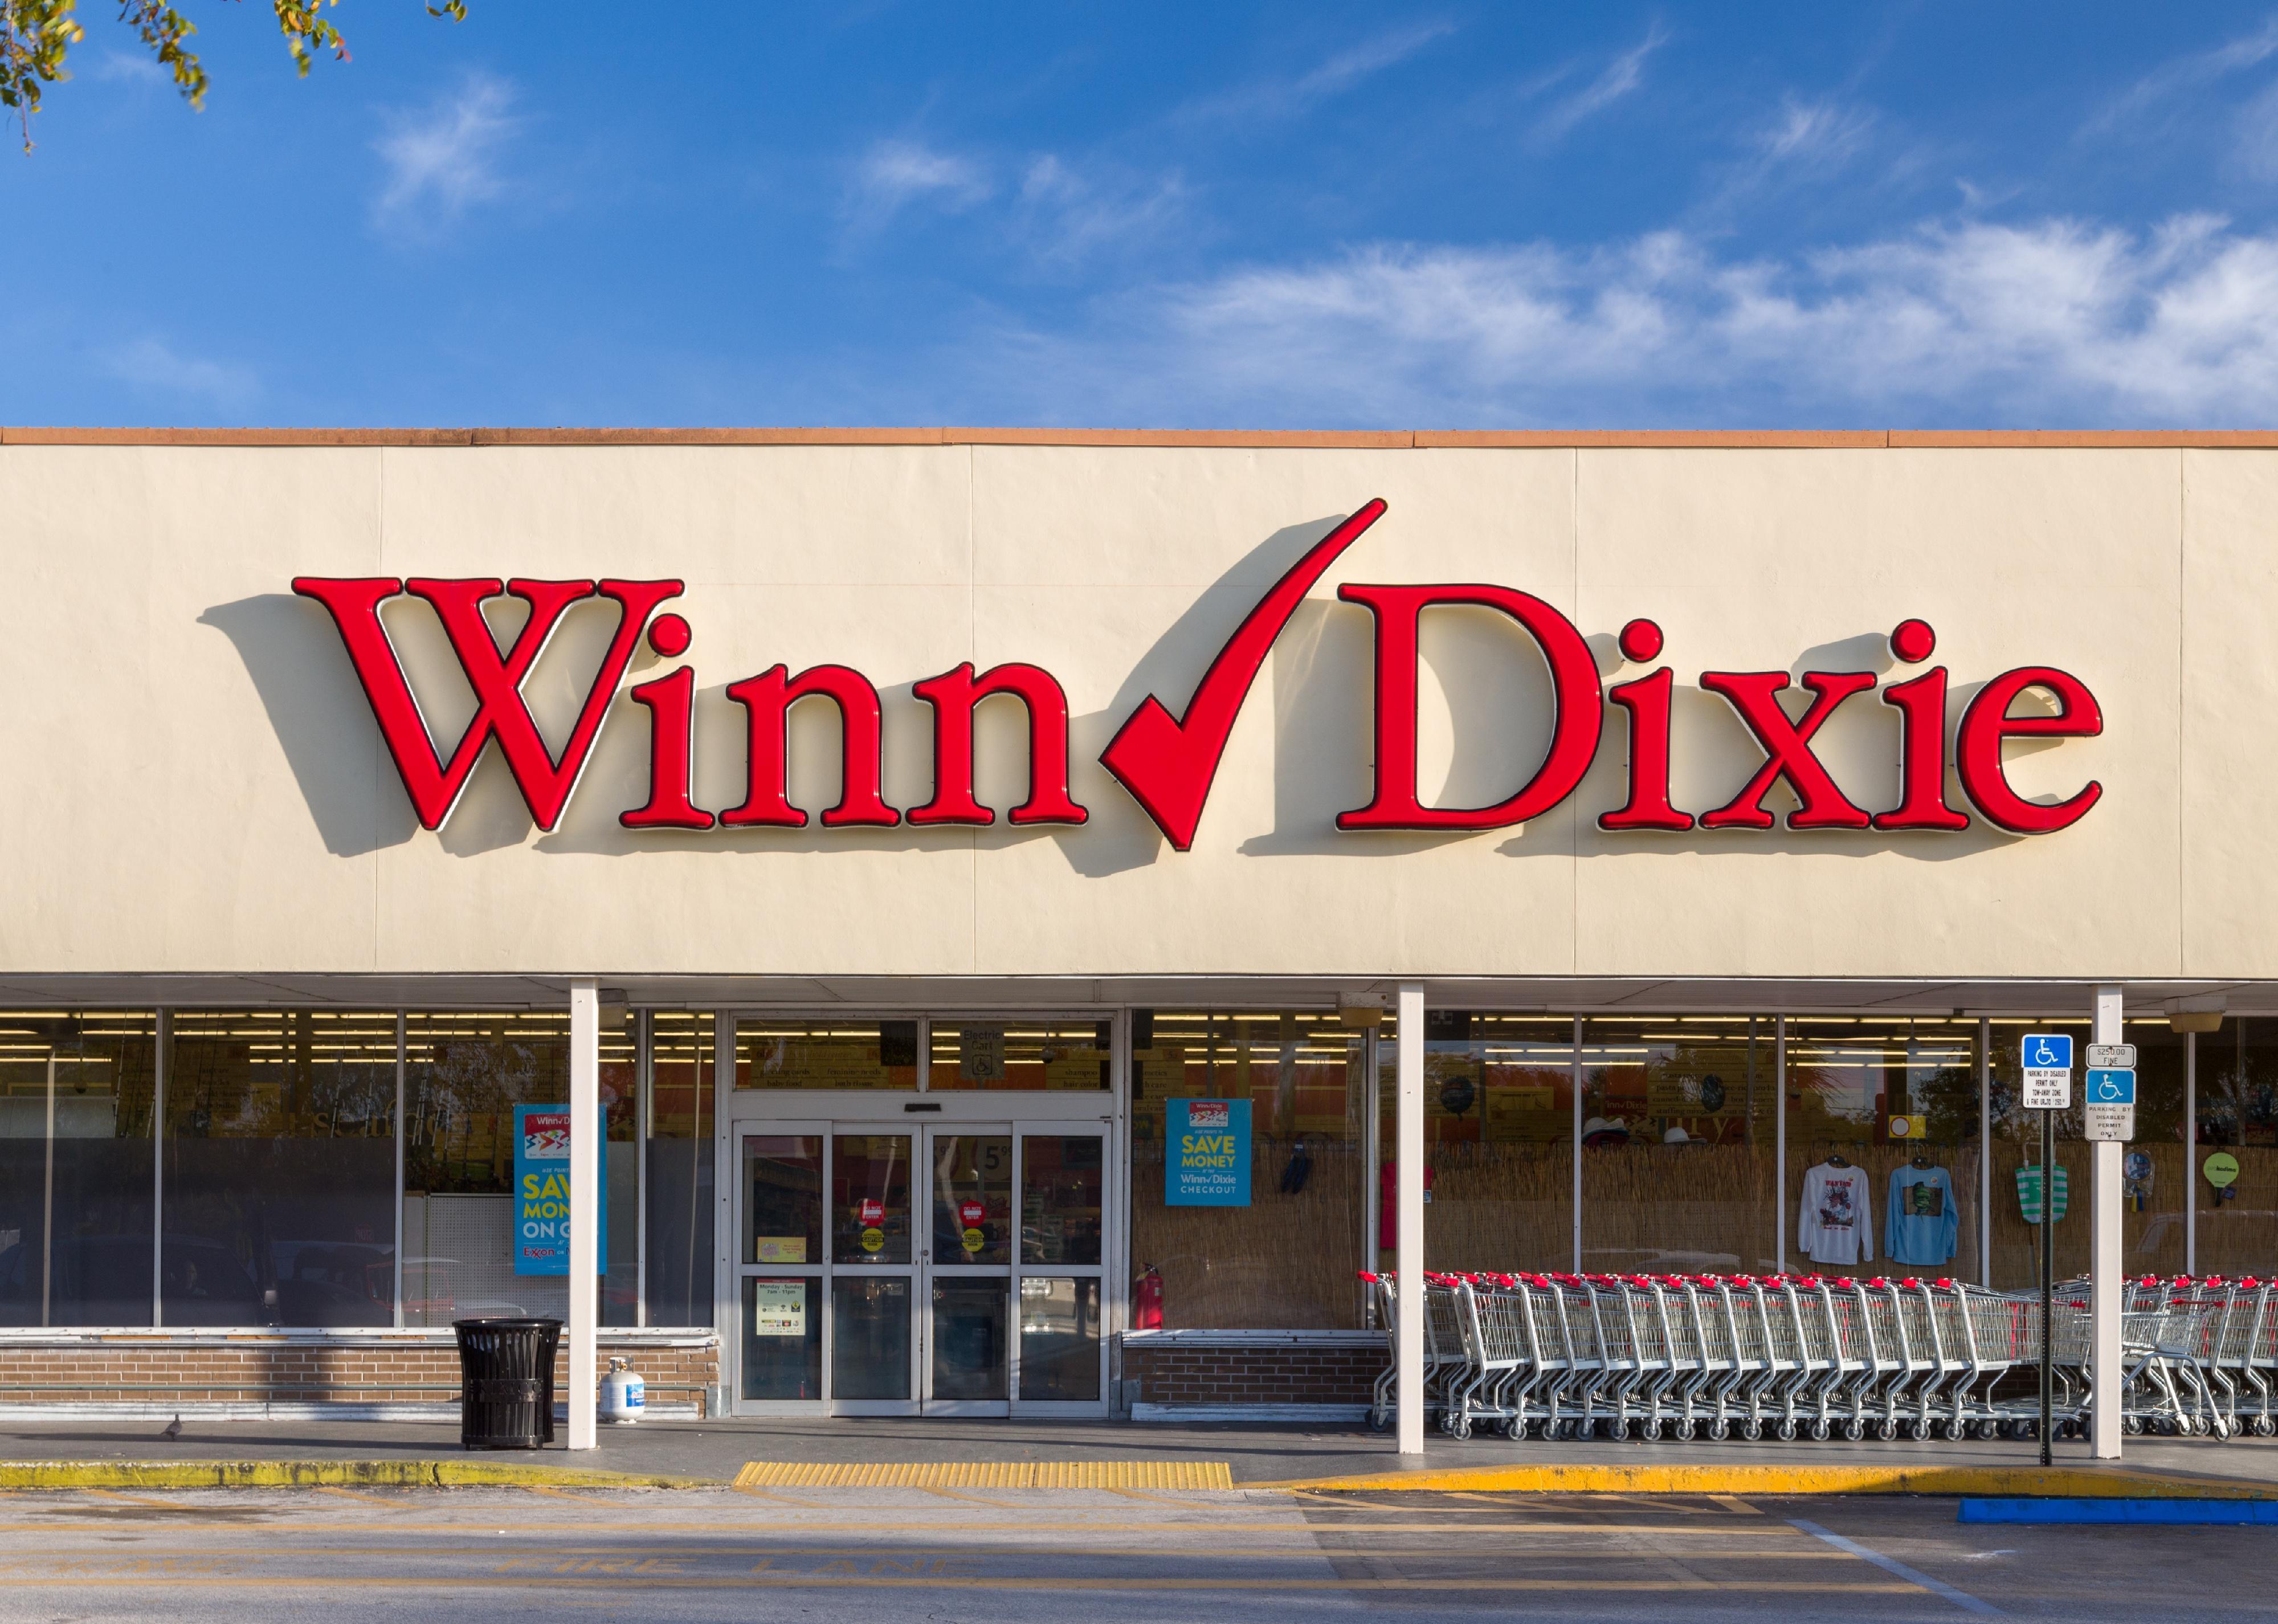 Winn-Dixie storefront.